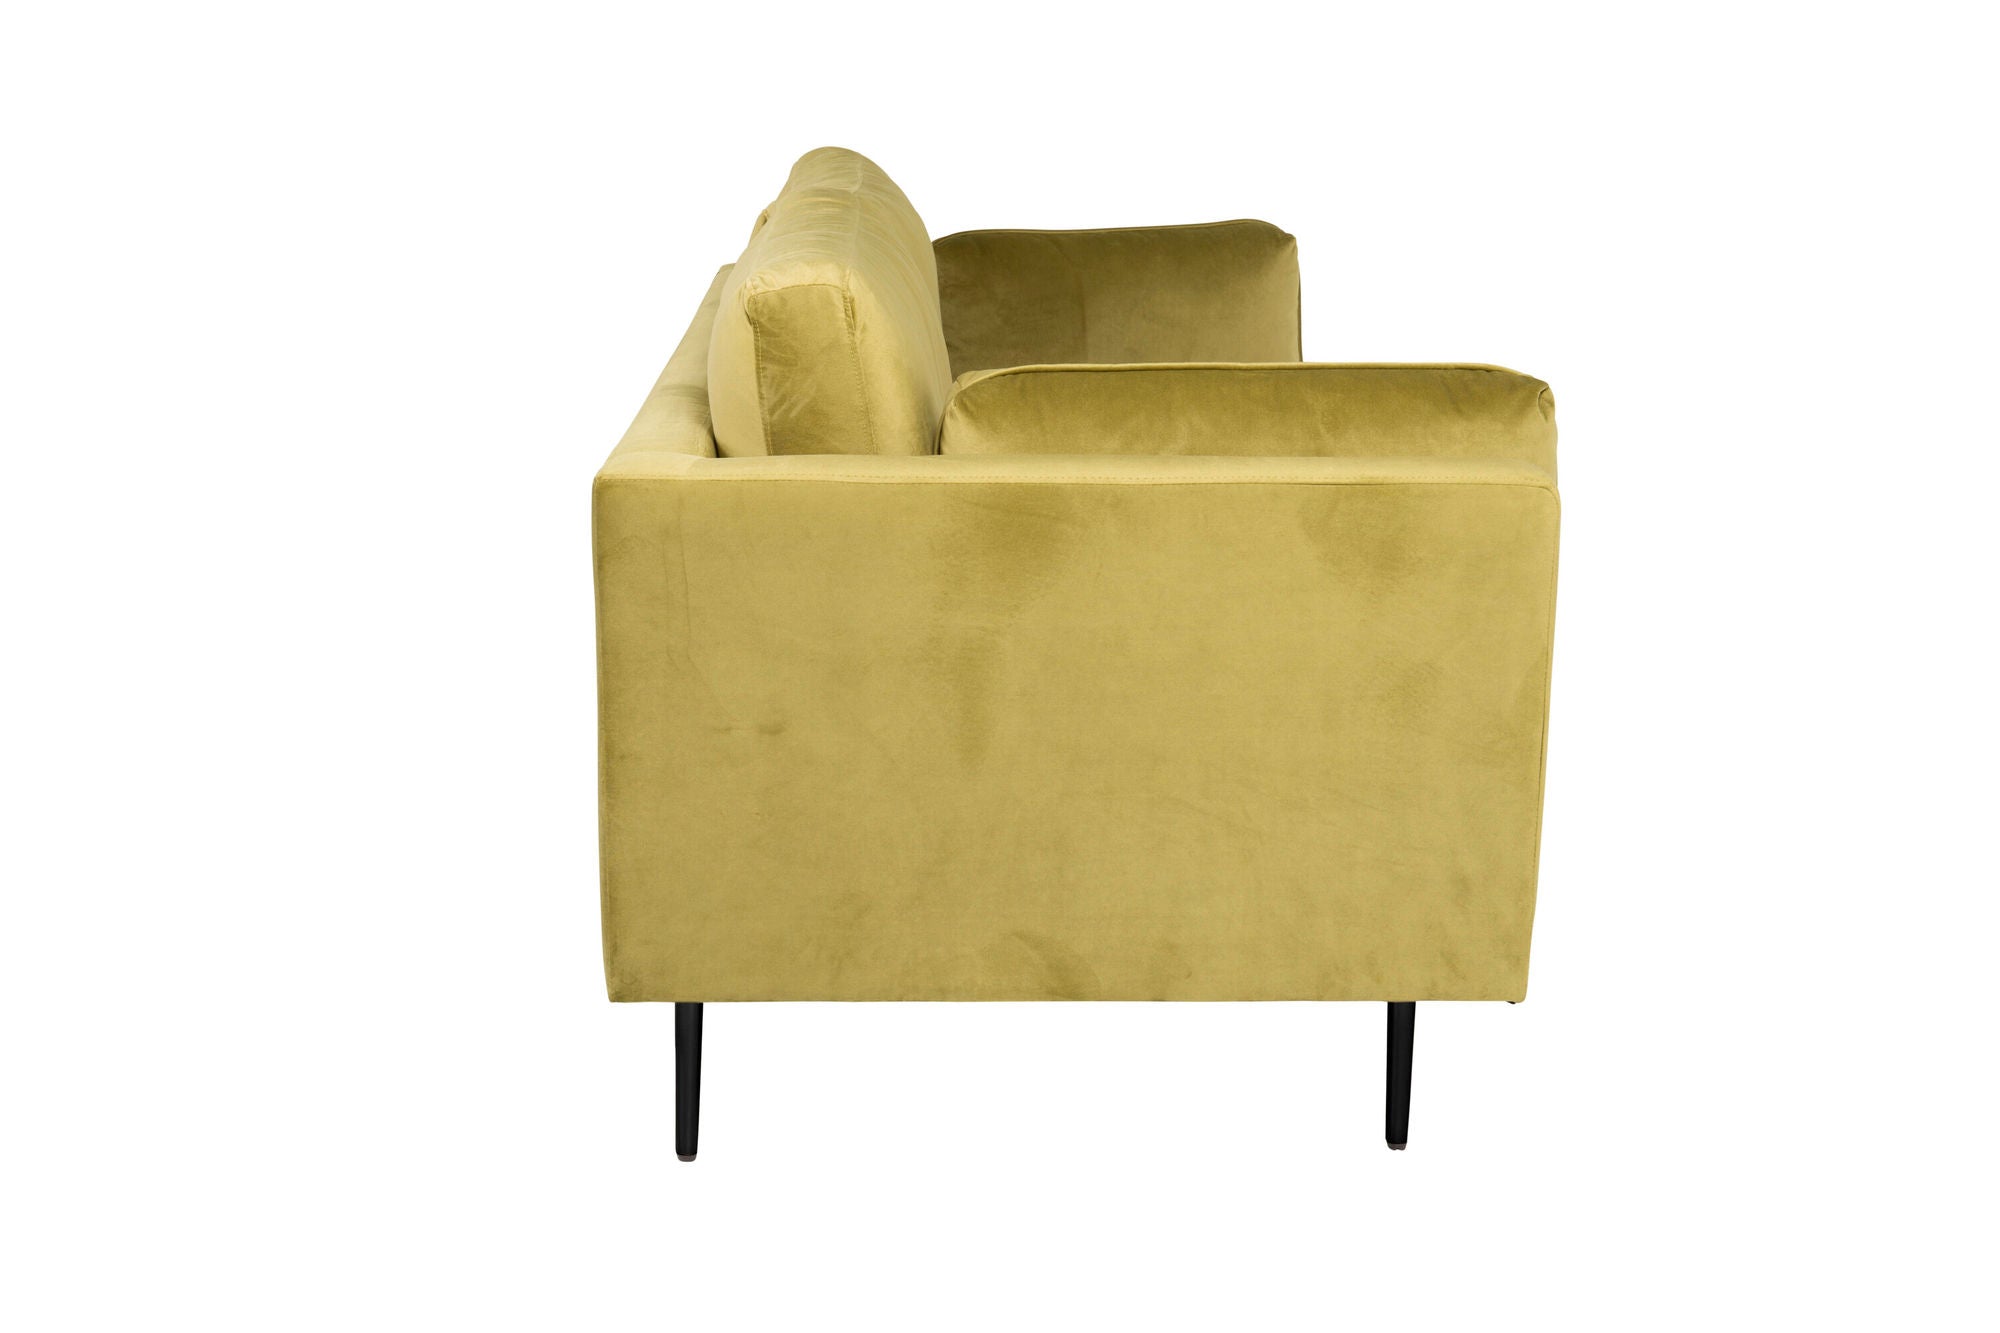 Venture Home Boom - 3 seat sofa Velvet - Spring Green+Black Legs for Boom Sofa - FULL SET_1 - vivahabitat.com